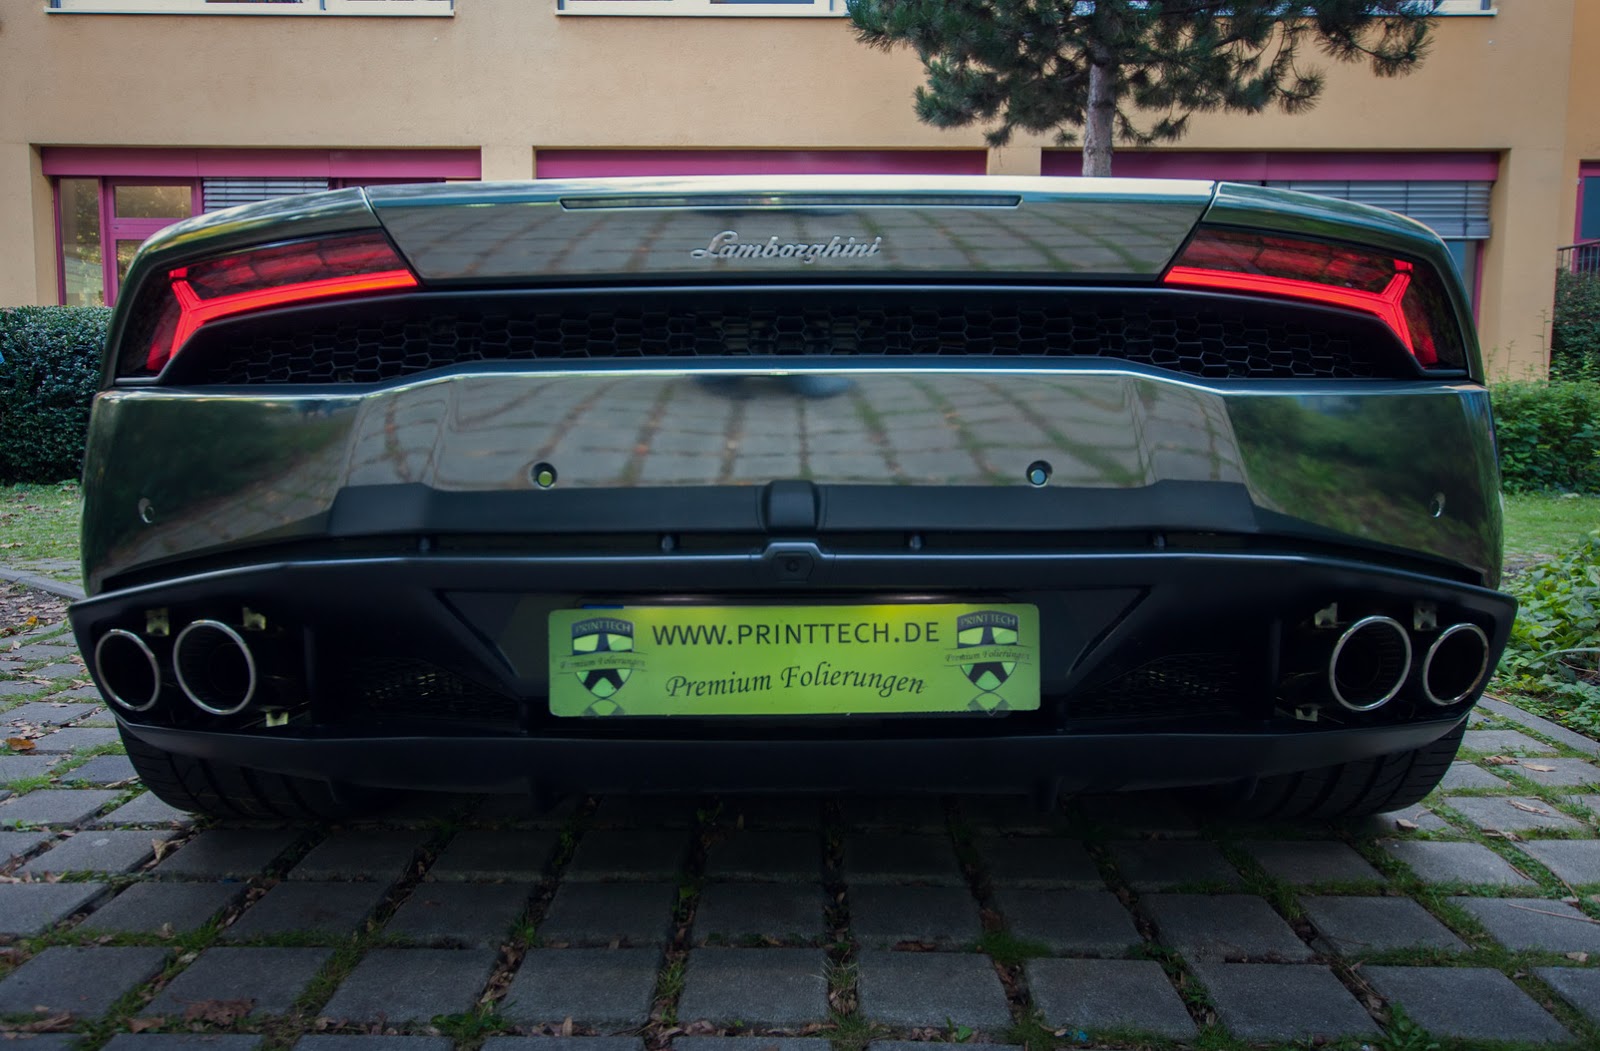 Lamborghini_Huracan_5.jpg